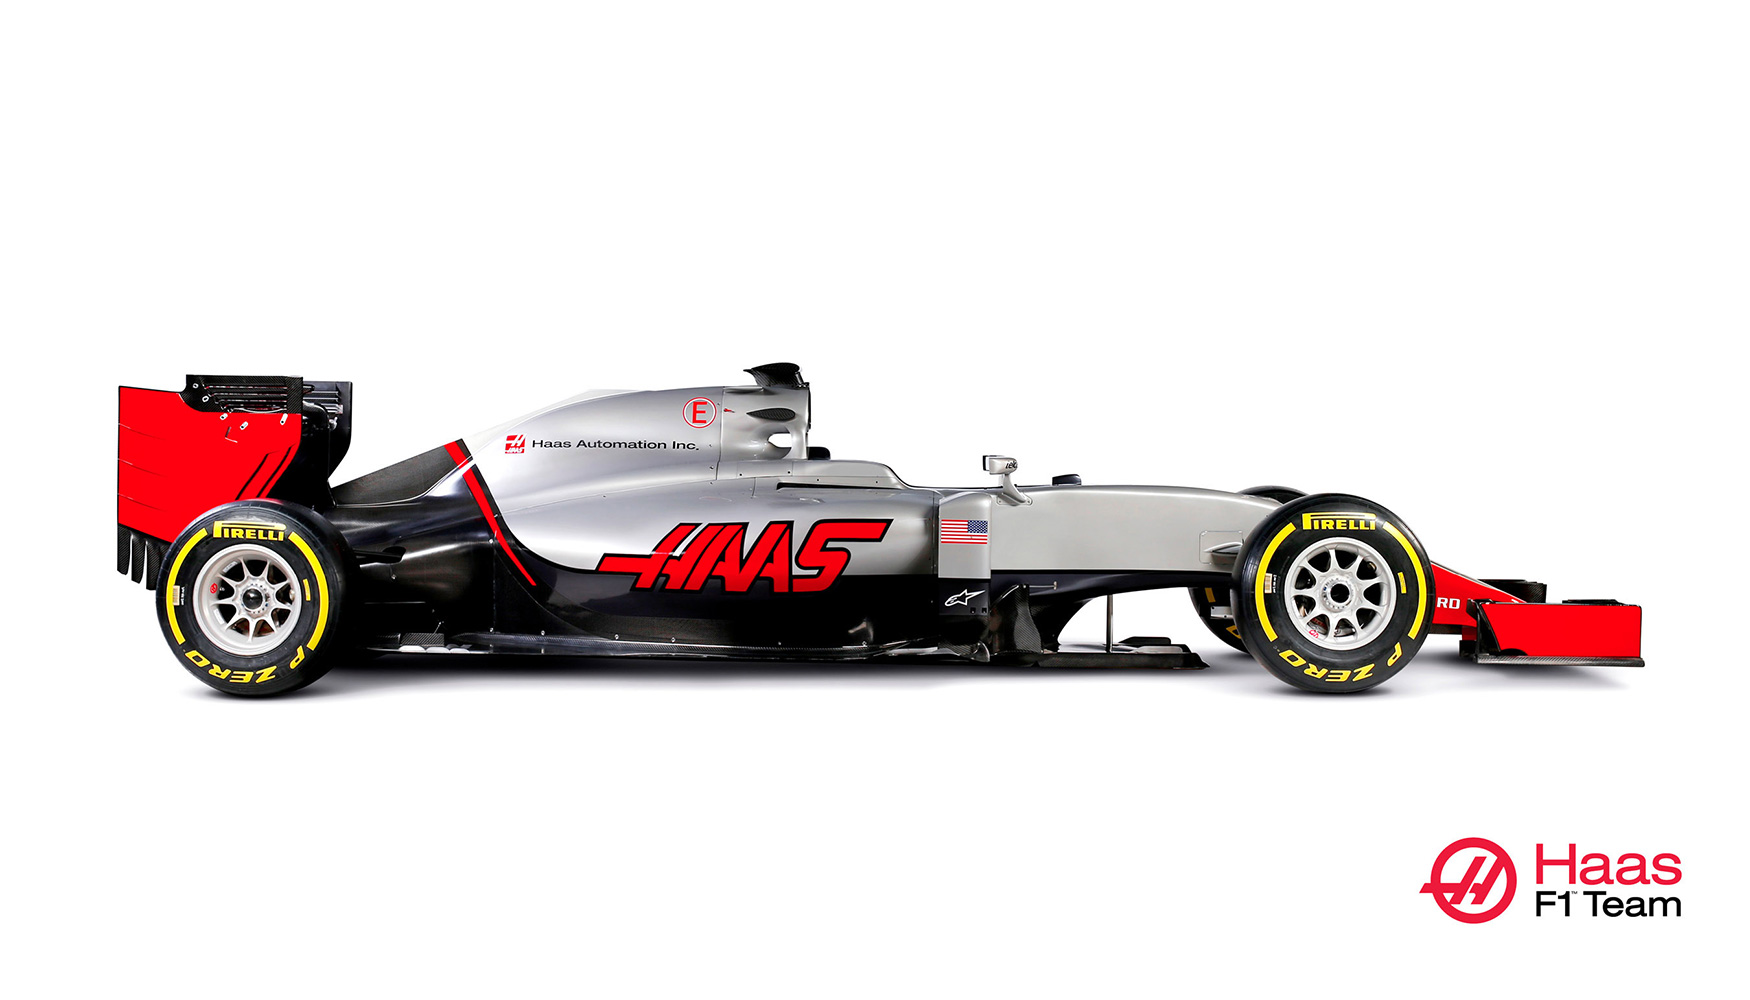 El coche de F1 Haas VF-16